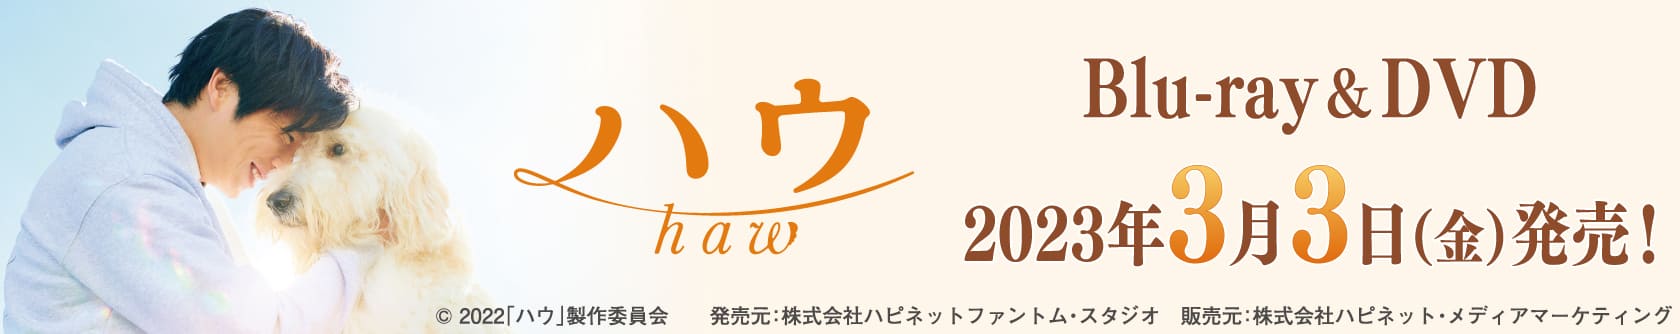 ハウ haw Blu-ray&DVD 2023年3月3日(金)発売！